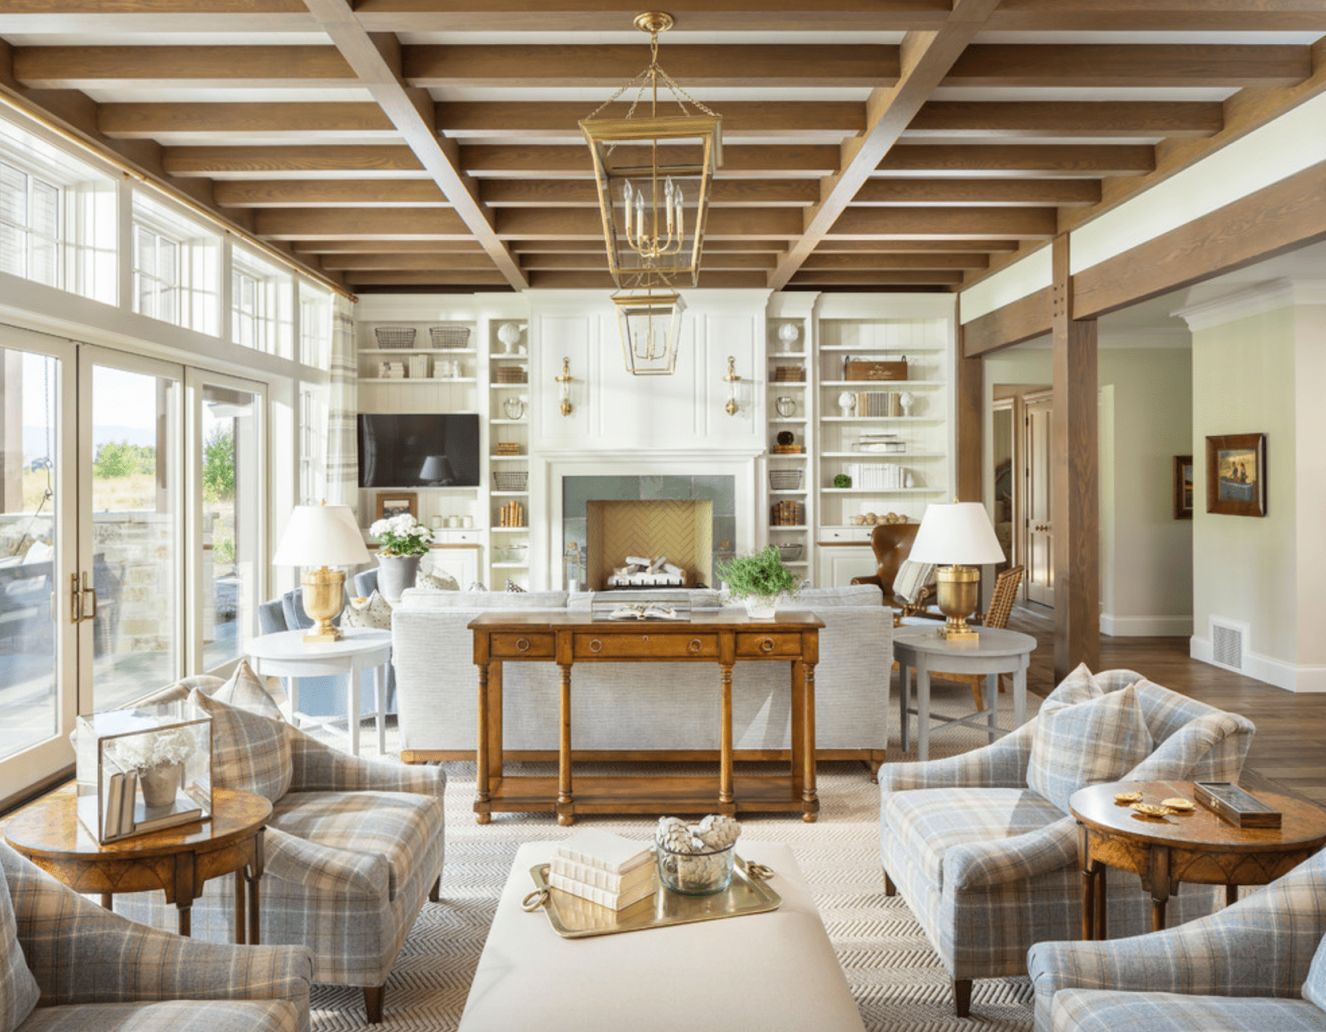  Best Rustic Living Room Interior Design 